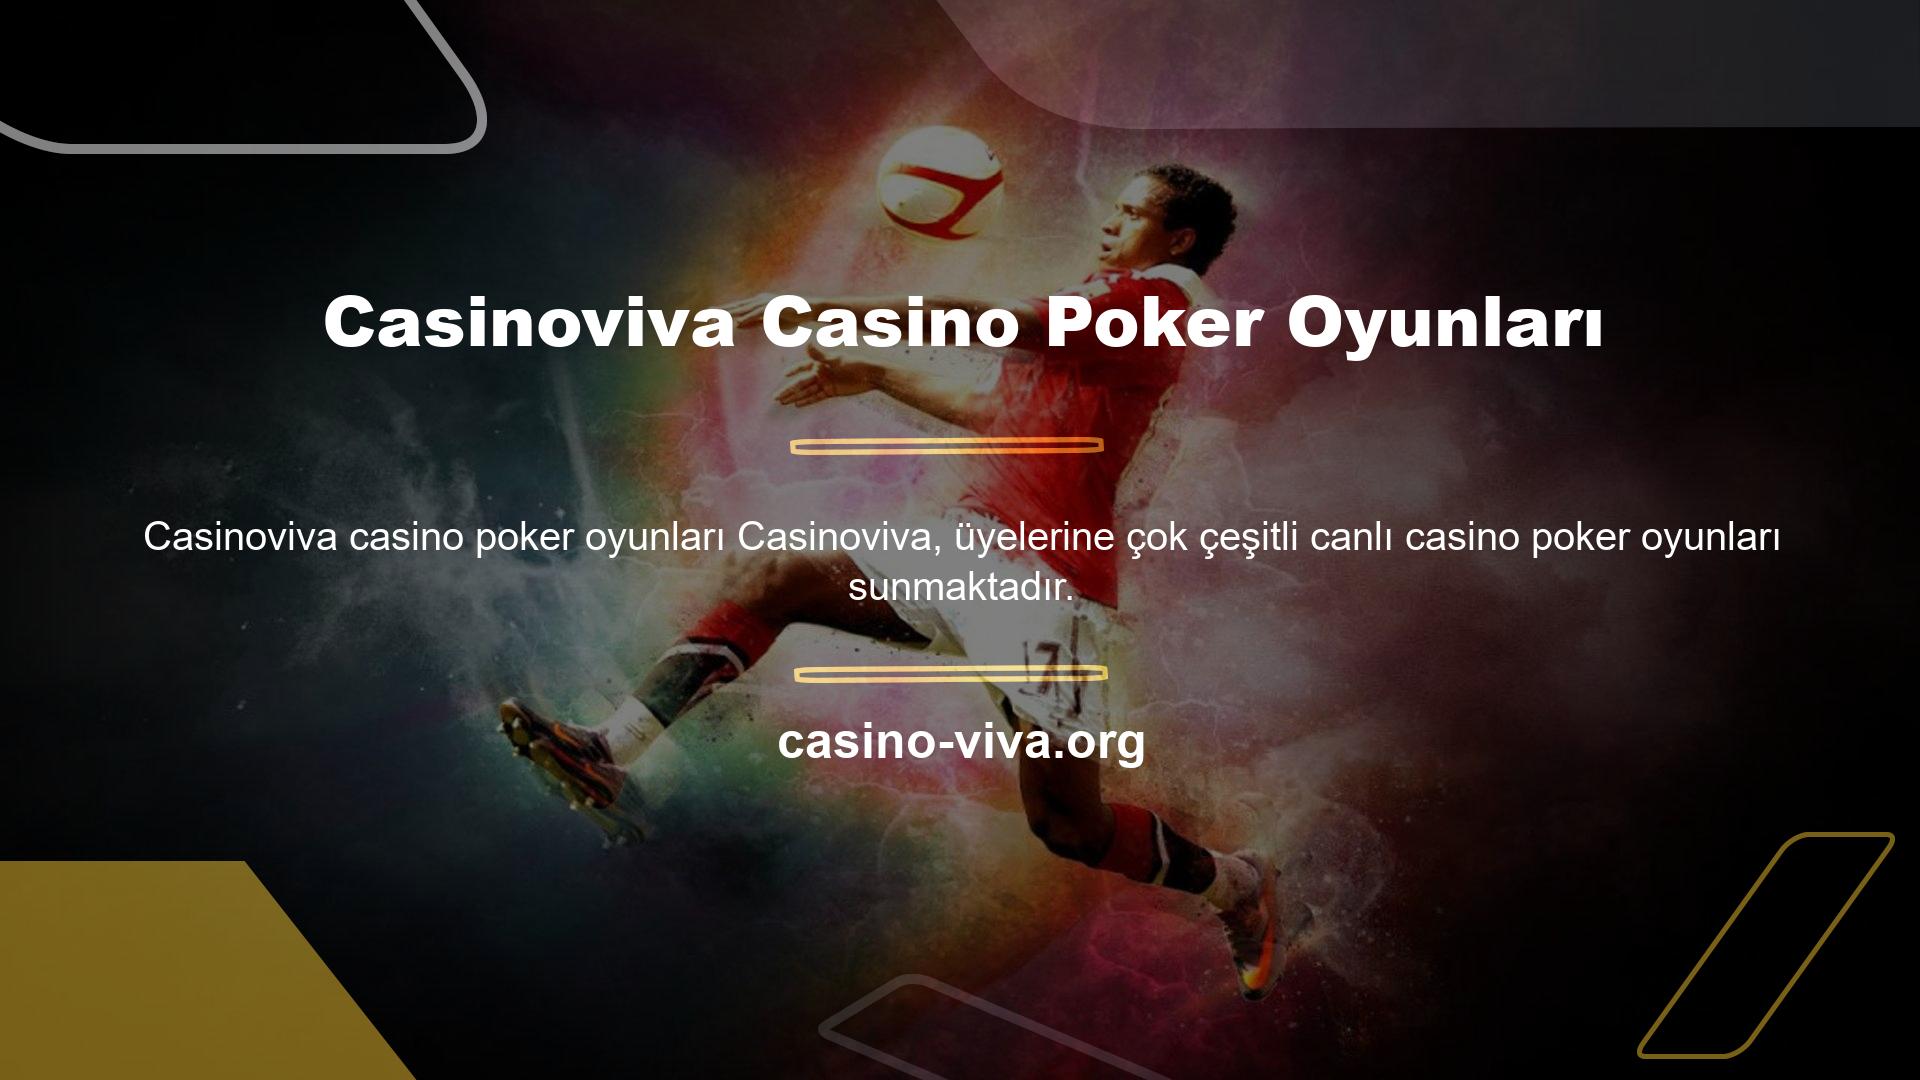 Casinoviva Casino Poker Oyunları